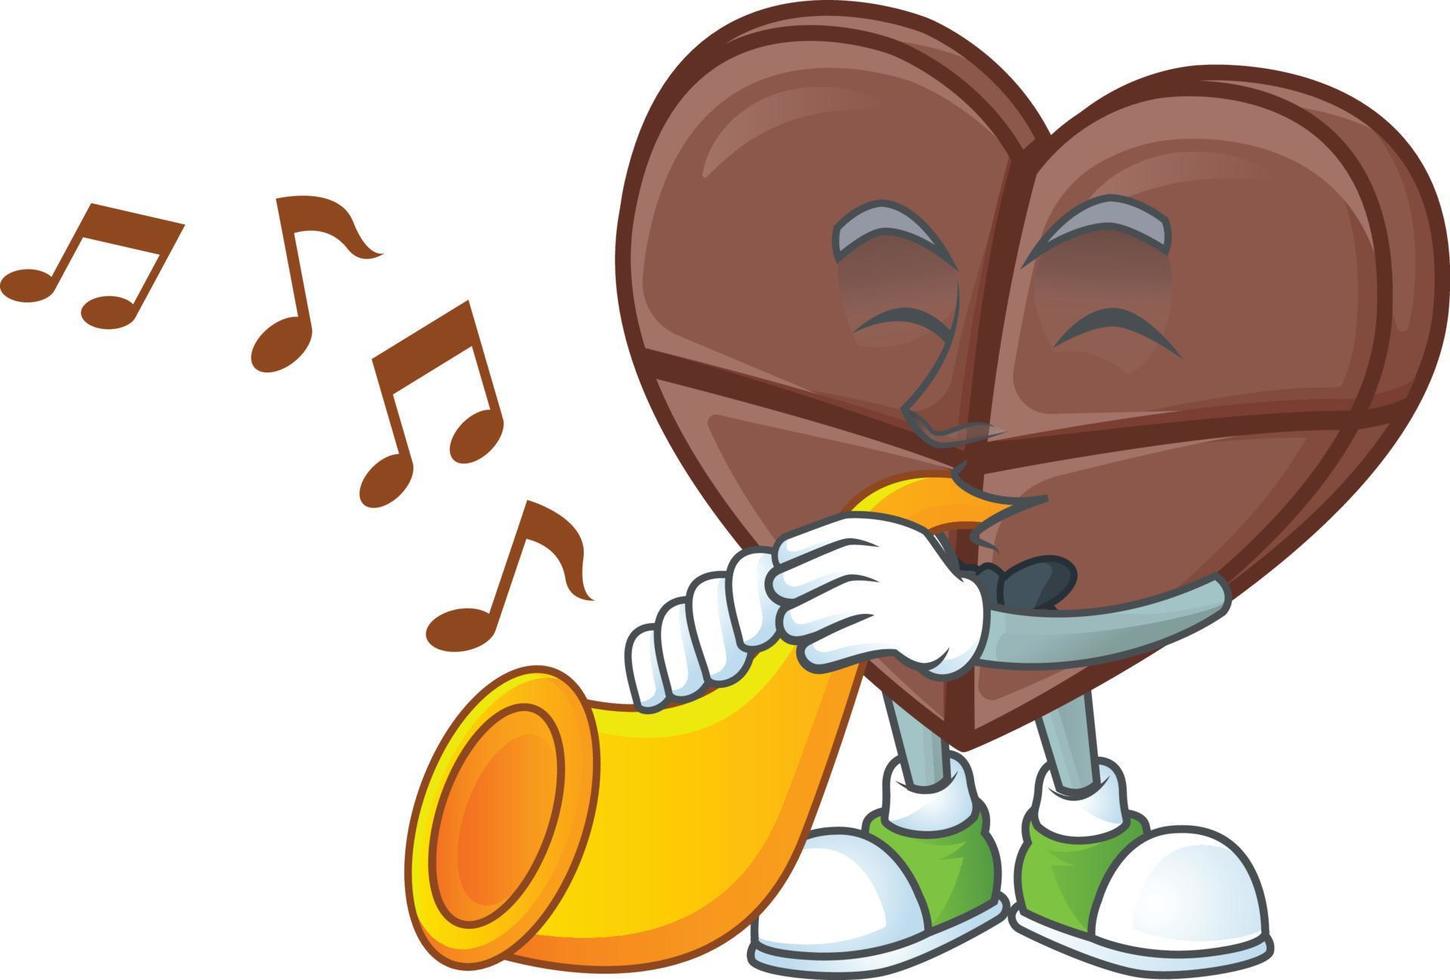 chocolate bar amor dibujos animados personaje estilo vector